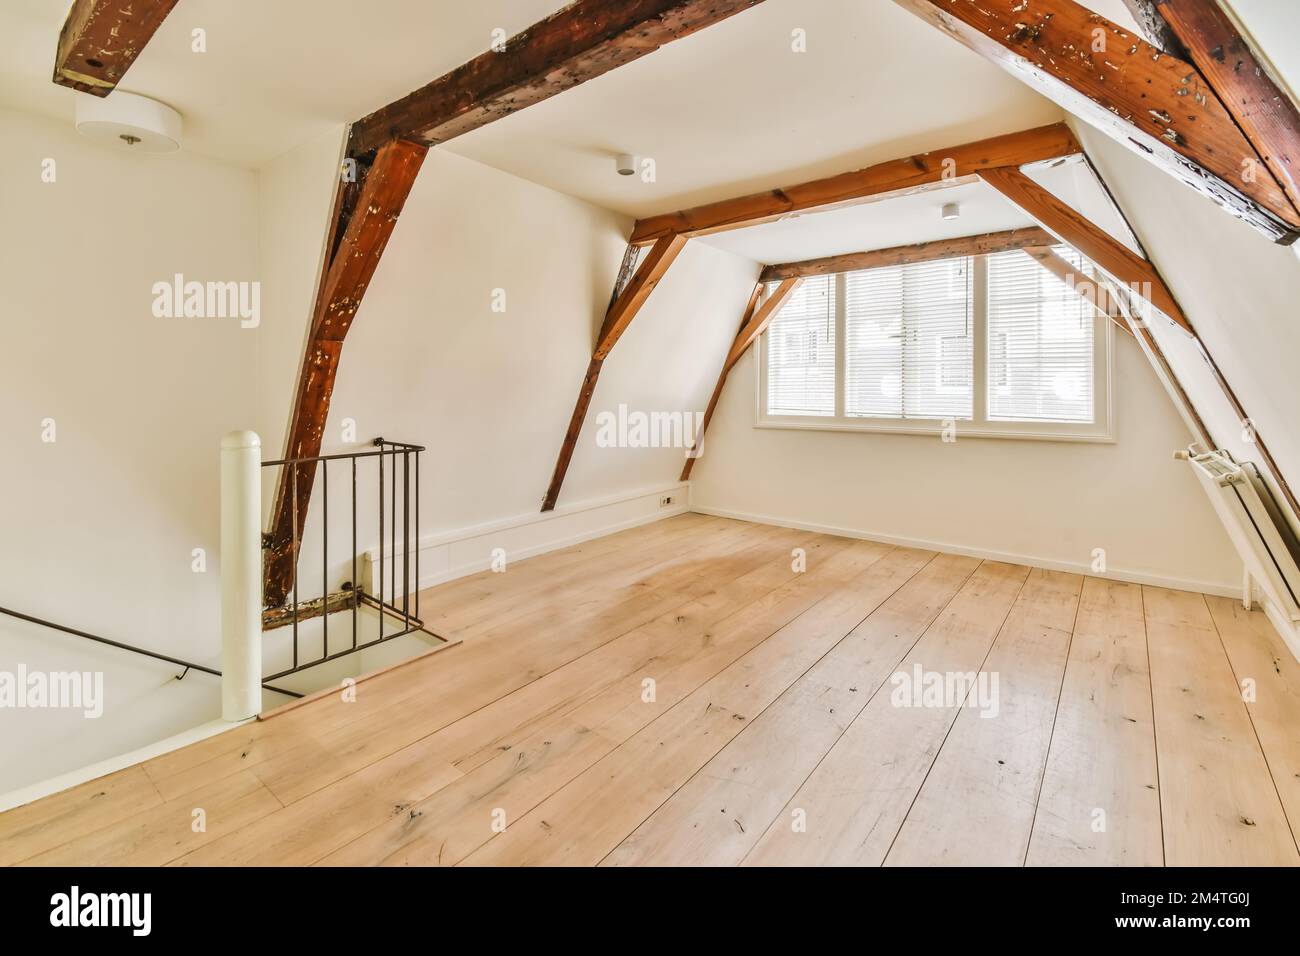 una habitación de estilo ático con pisos de madera y vigas a la vista en el techo de esta casa está muy bien amueblada Foto de stock